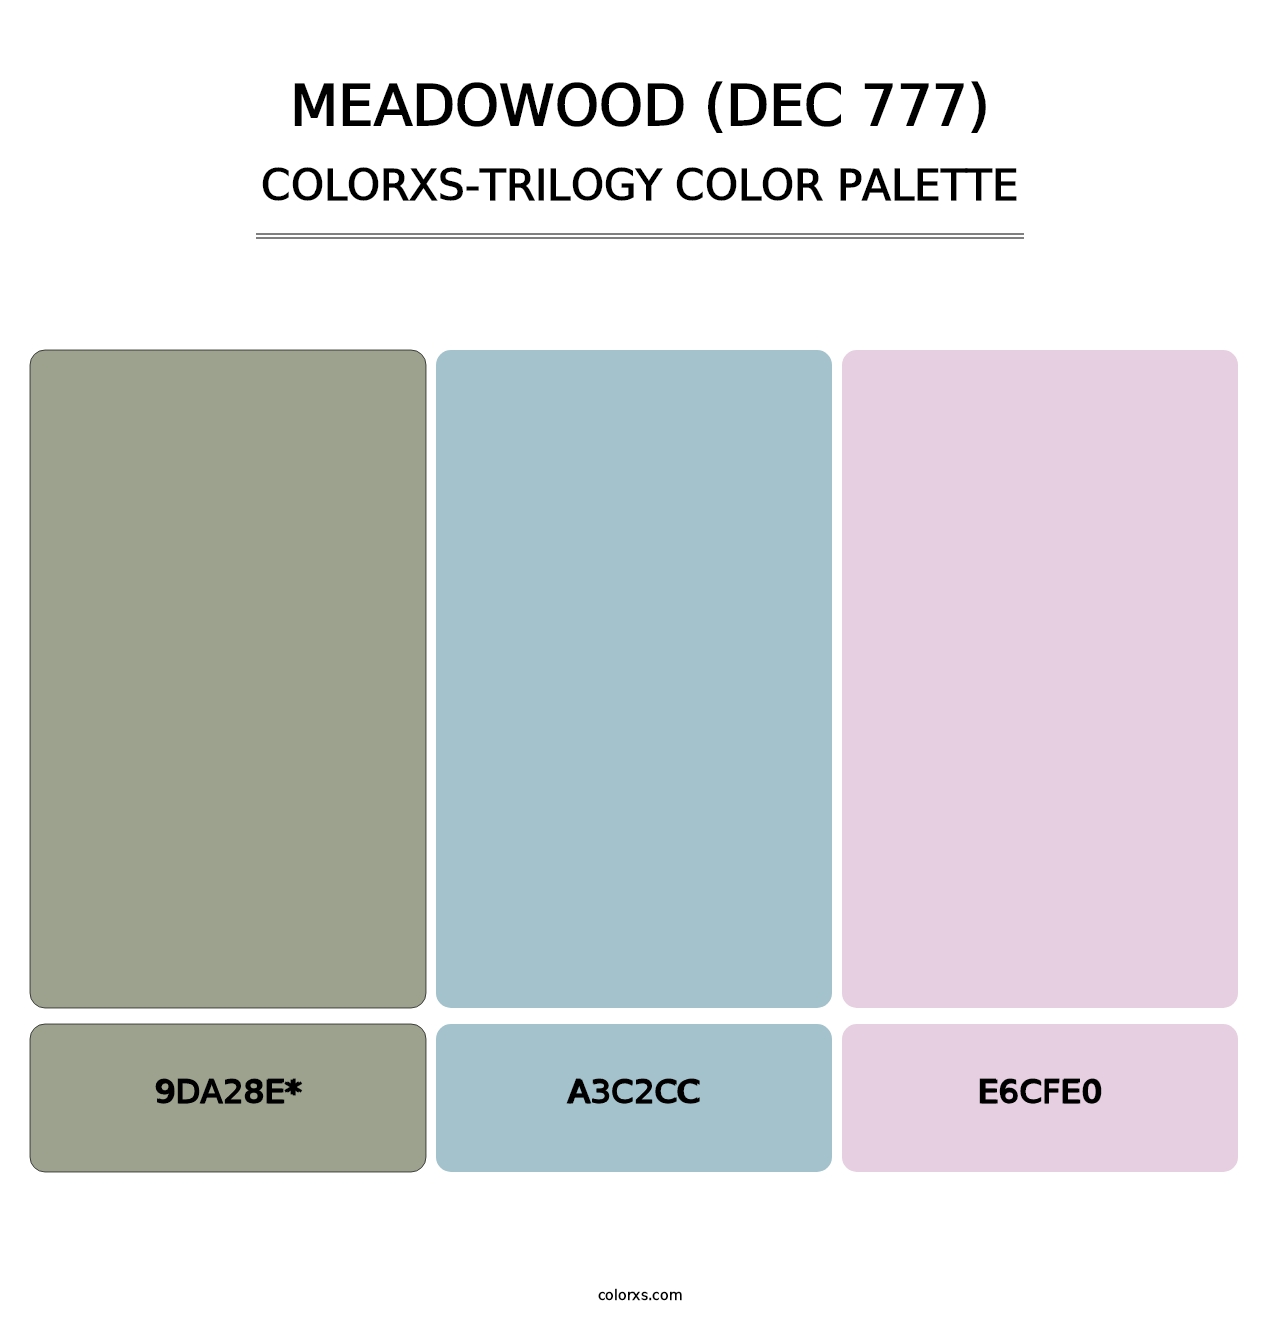 Meadowood (DEC 777) - Colorxs Trilogy Palette